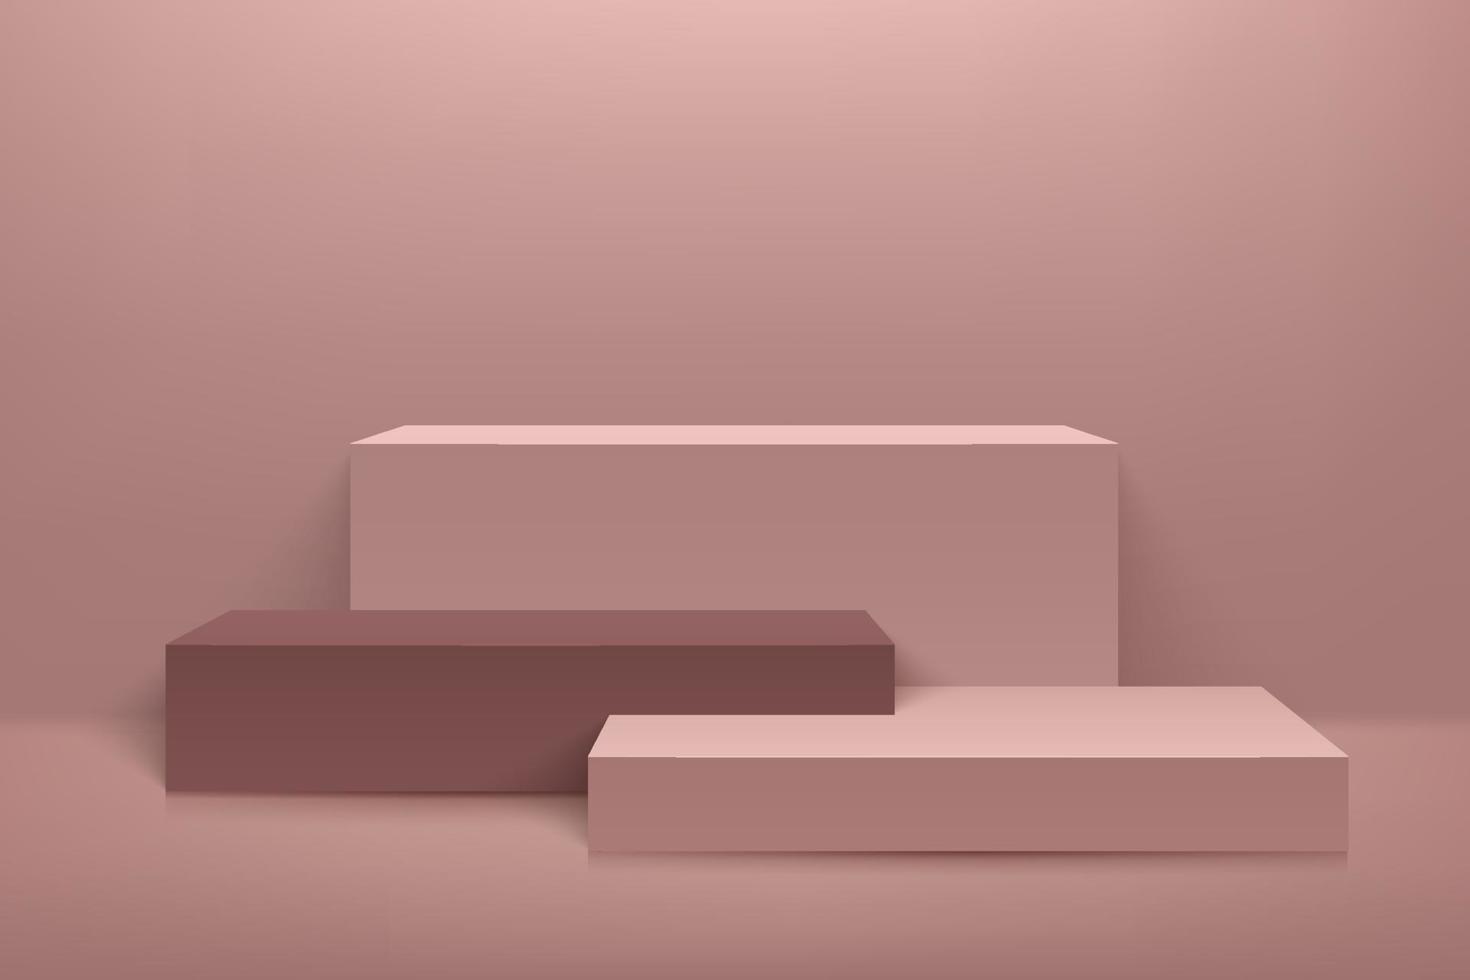 affichage abstrait de cube en or rose pour produit sur site Web moderne. rendu de fond de luxe avec podium et scène de mur de texture minimal en or rose, forme géométrique de rendu 3D. illustration vectorielle vecteur